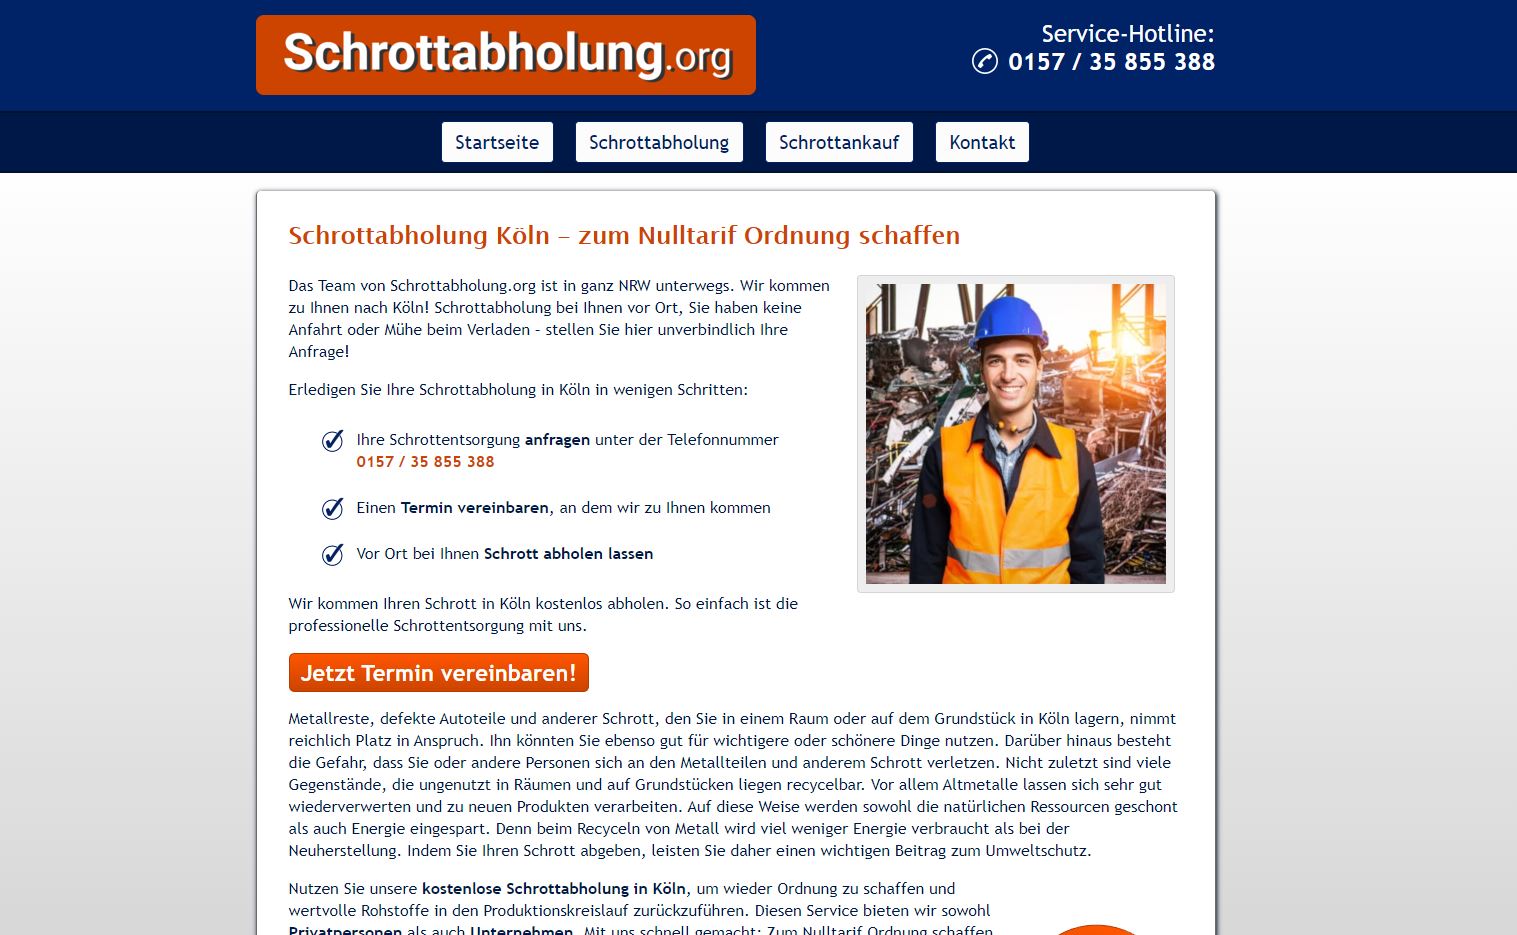 Schrottabholung in Köln: Wir helfen Ihnen gerne weiter!